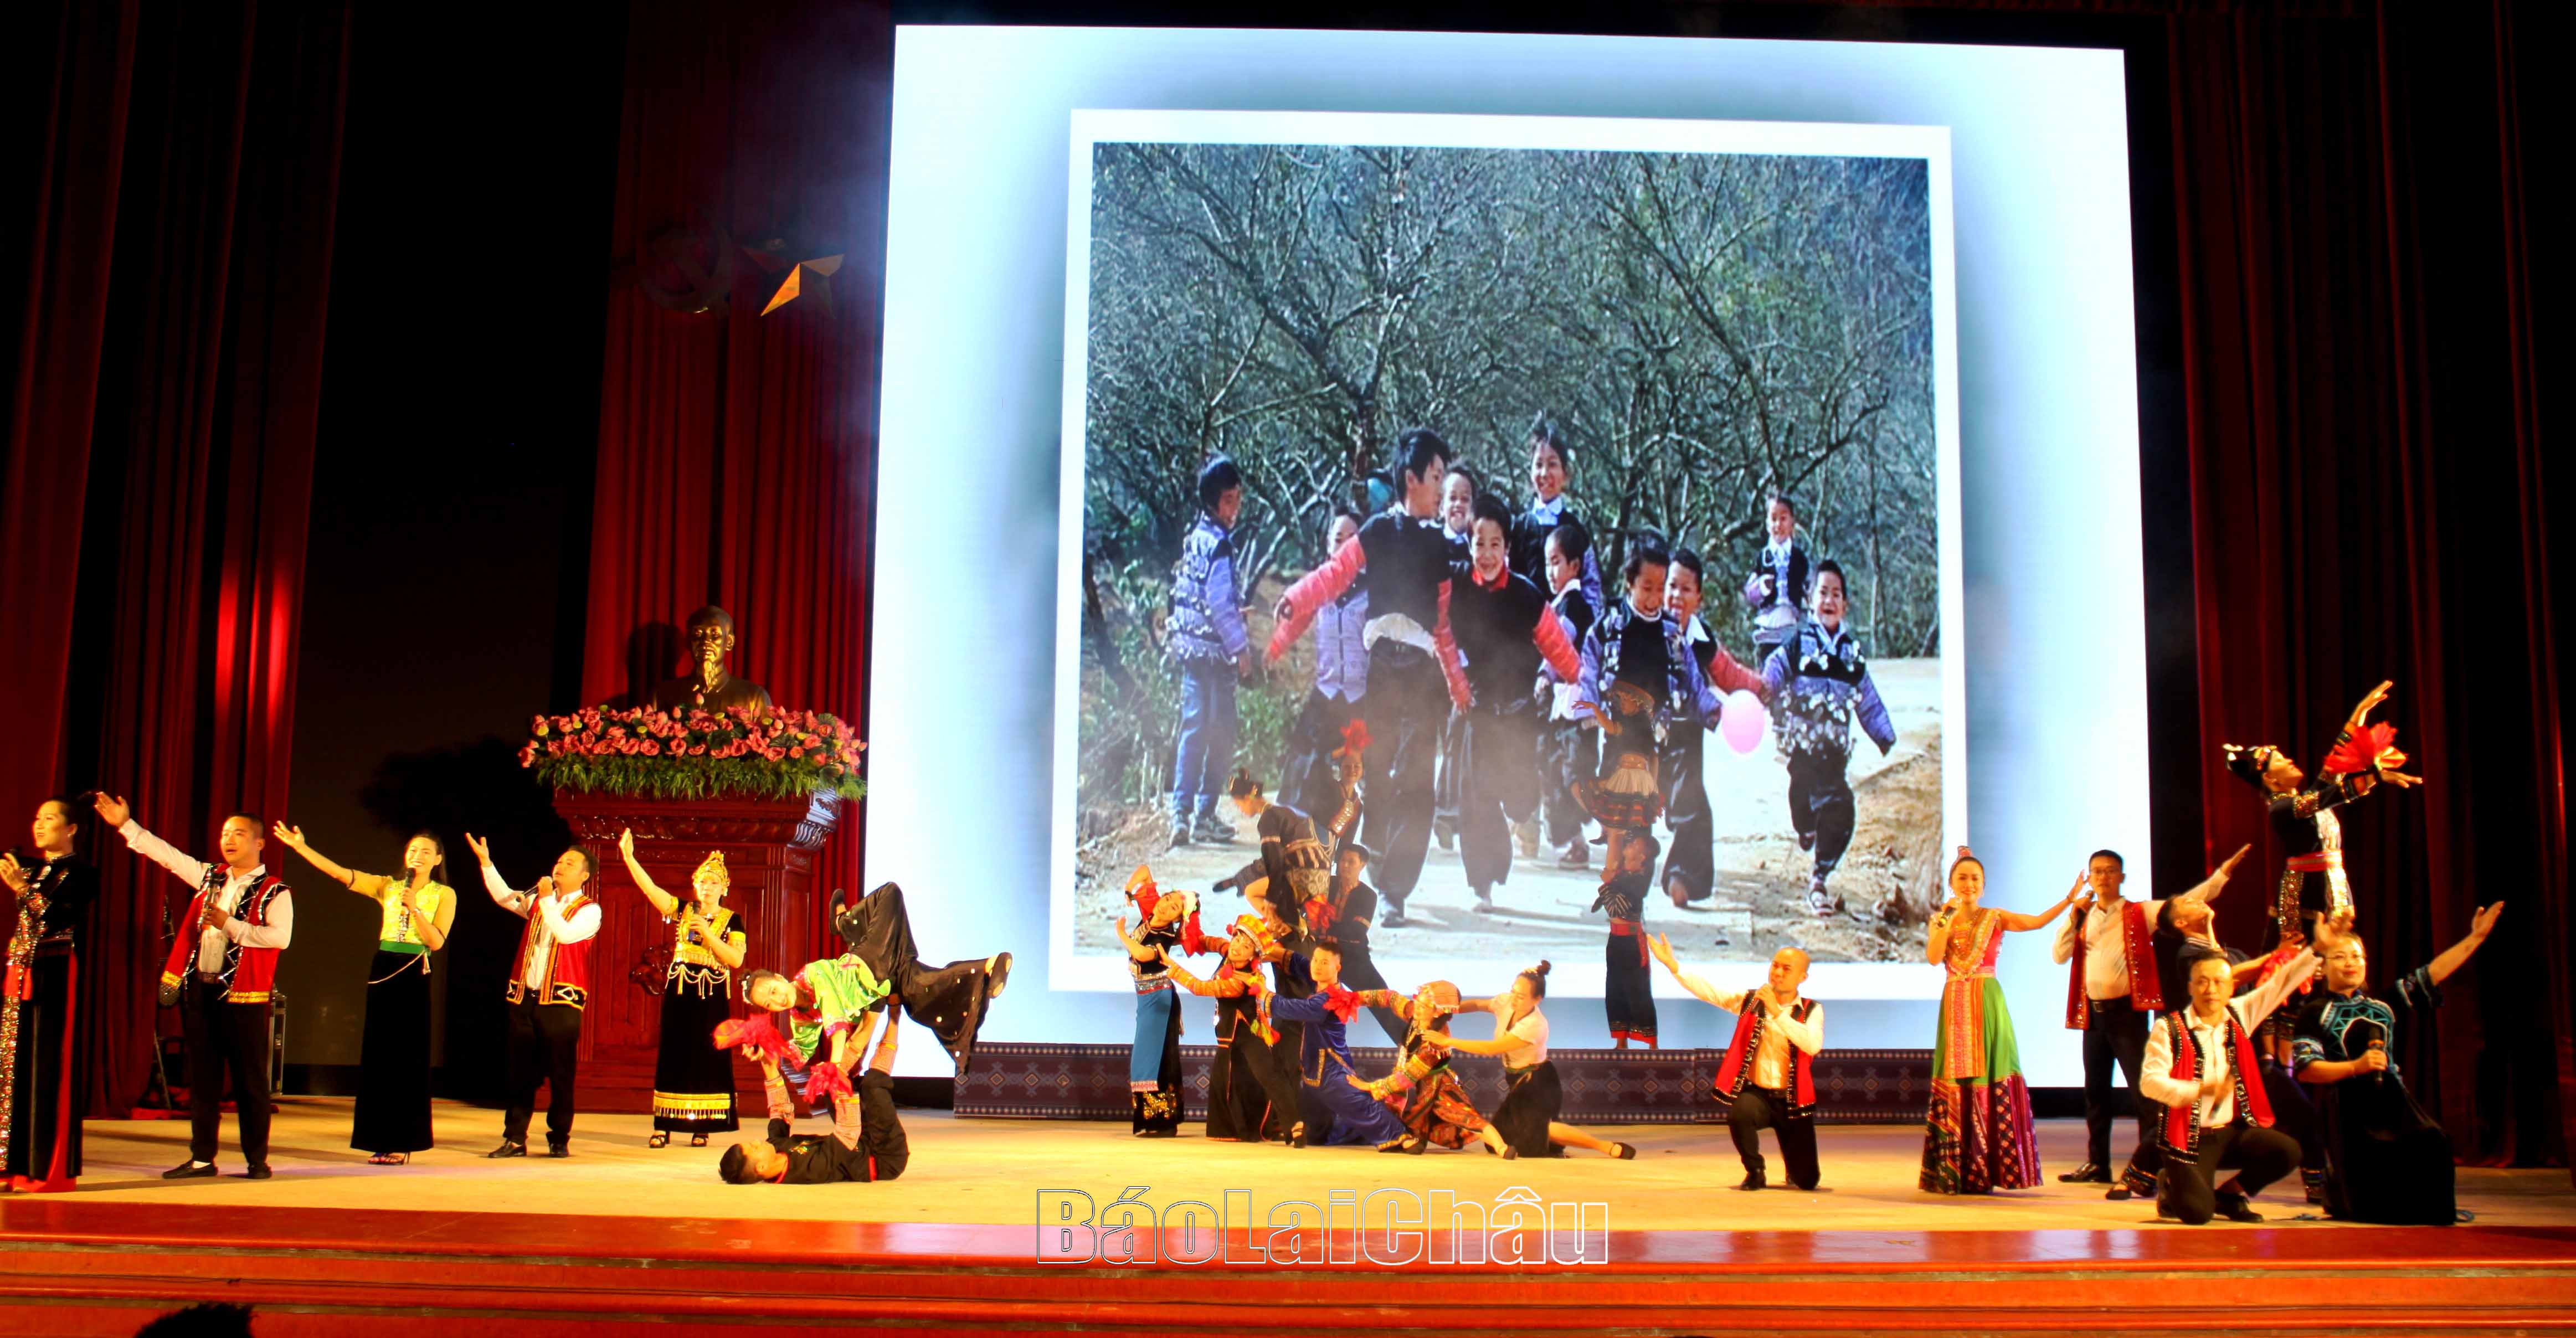 Tiết mục "Lai Châu miền huyền thoại" của đoàn Sở Tài nguyên - Môi trường tỉnh Lai Châu được Ban Tổ chức trao giải A.